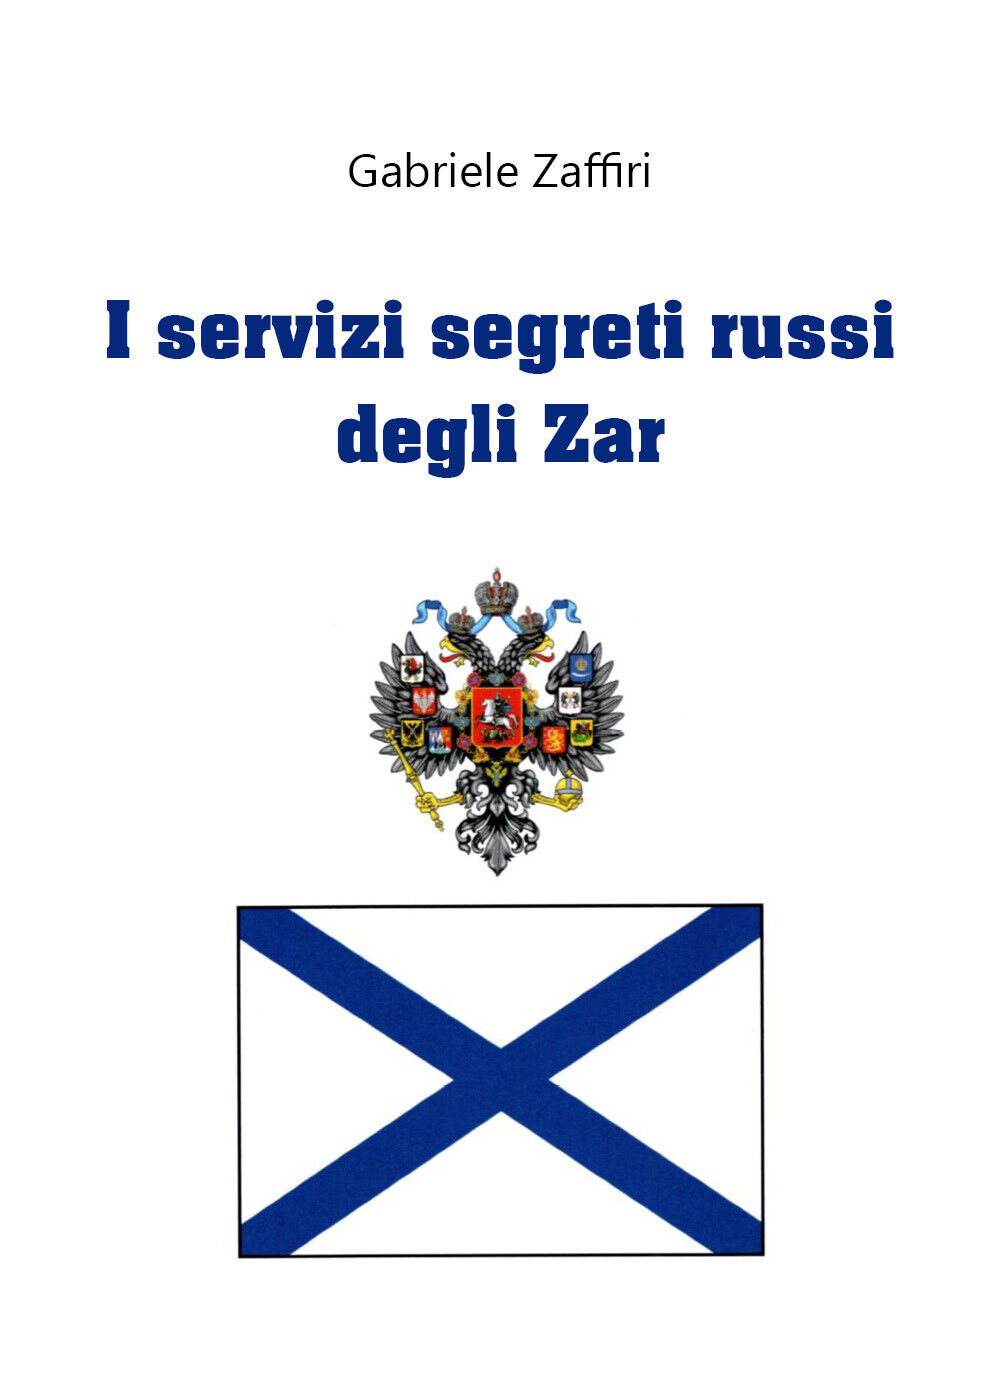 I servizi segreti russi degli zar di Gabriele Zaffiri,  2020,  Youcanprint